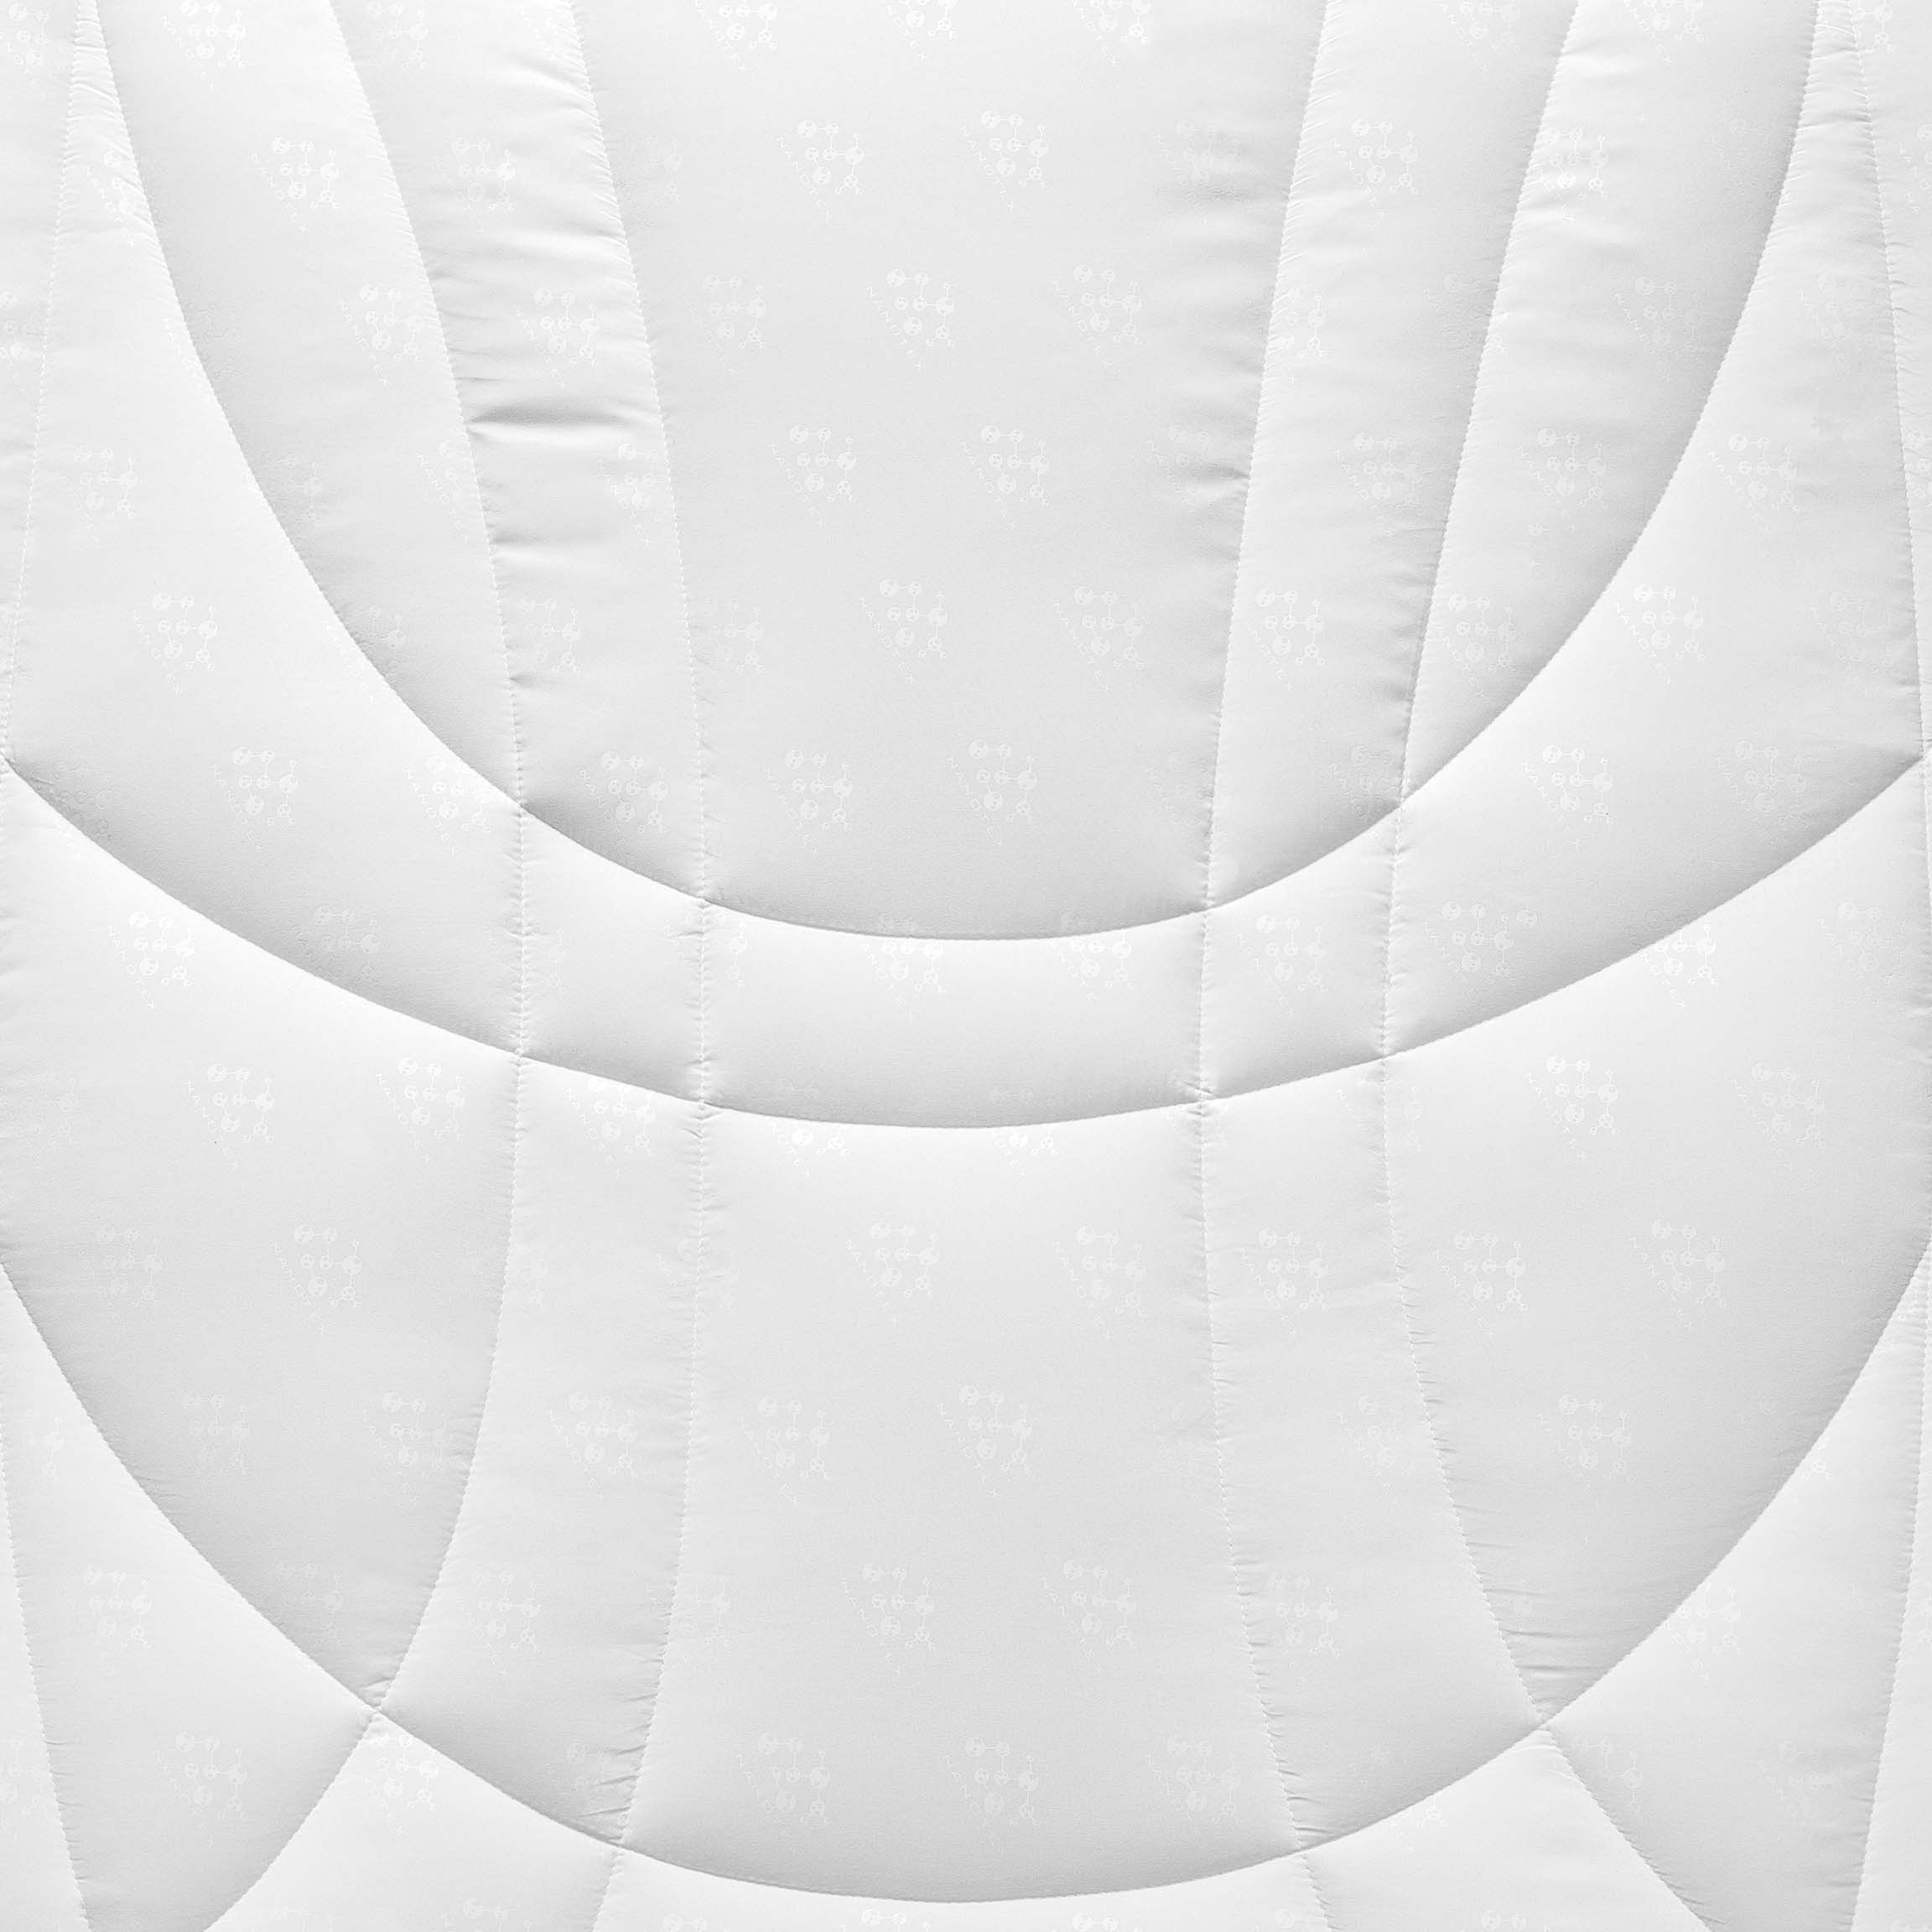 Одеяла Одеяло Гелиос  - Фото